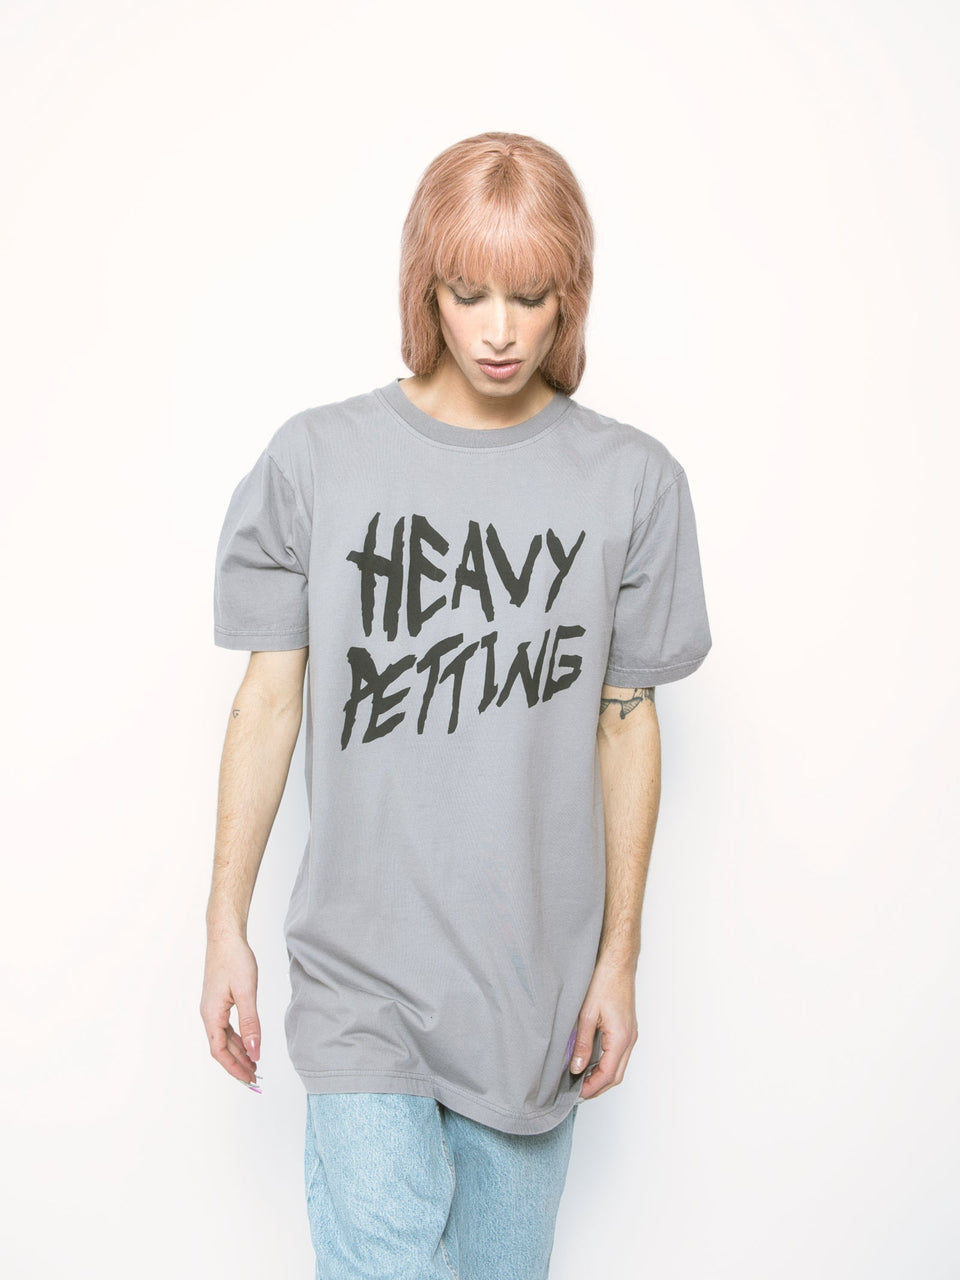 heavy petting/2324 - tshirt - unisex